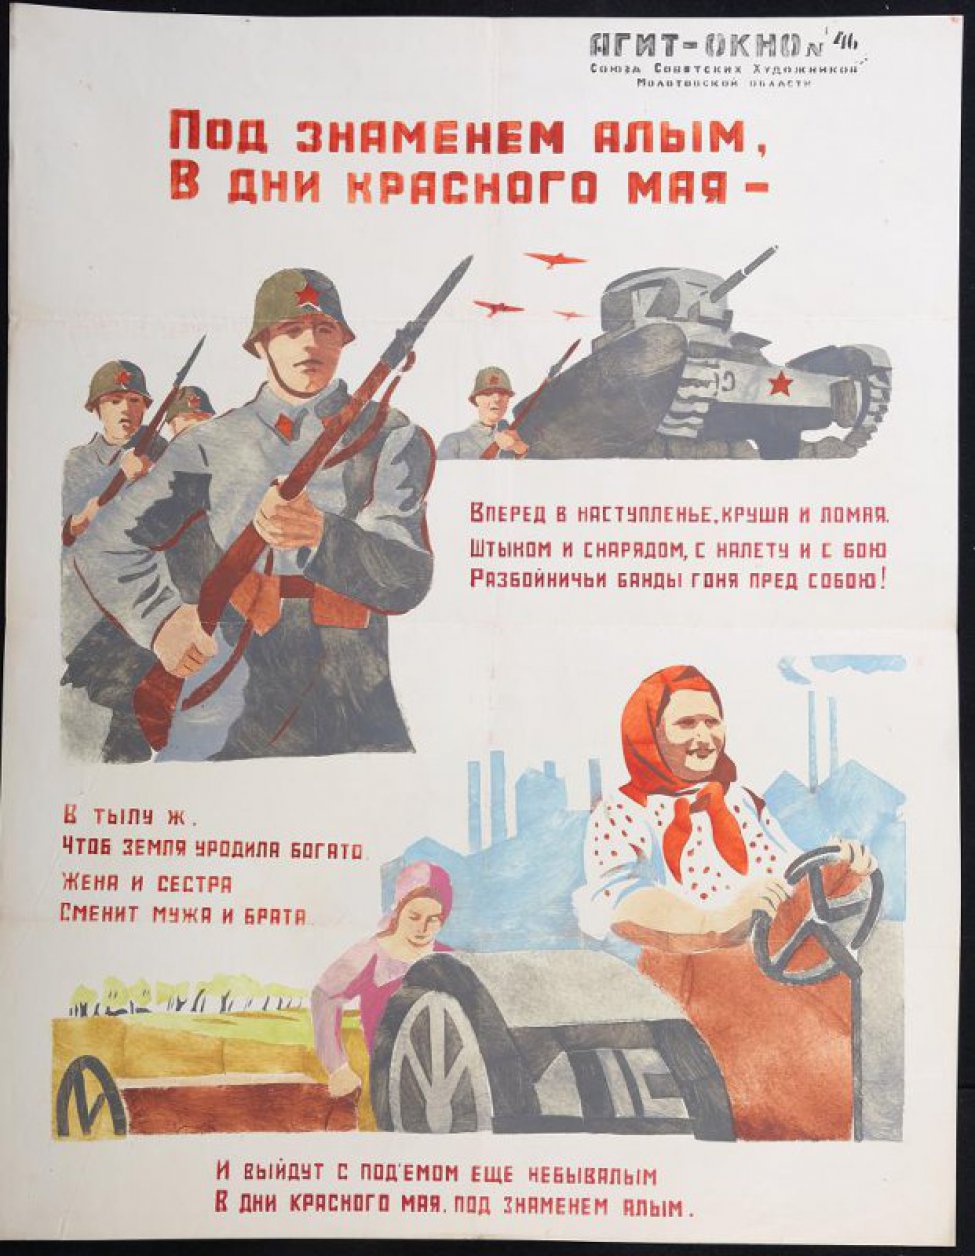 Помещены 3 рисунка: 1) советский танк; 2) советские бойцы с винтовками в руках; 3) женщина за рулем трактора, "и выйдут с подъемом еще небывалым".